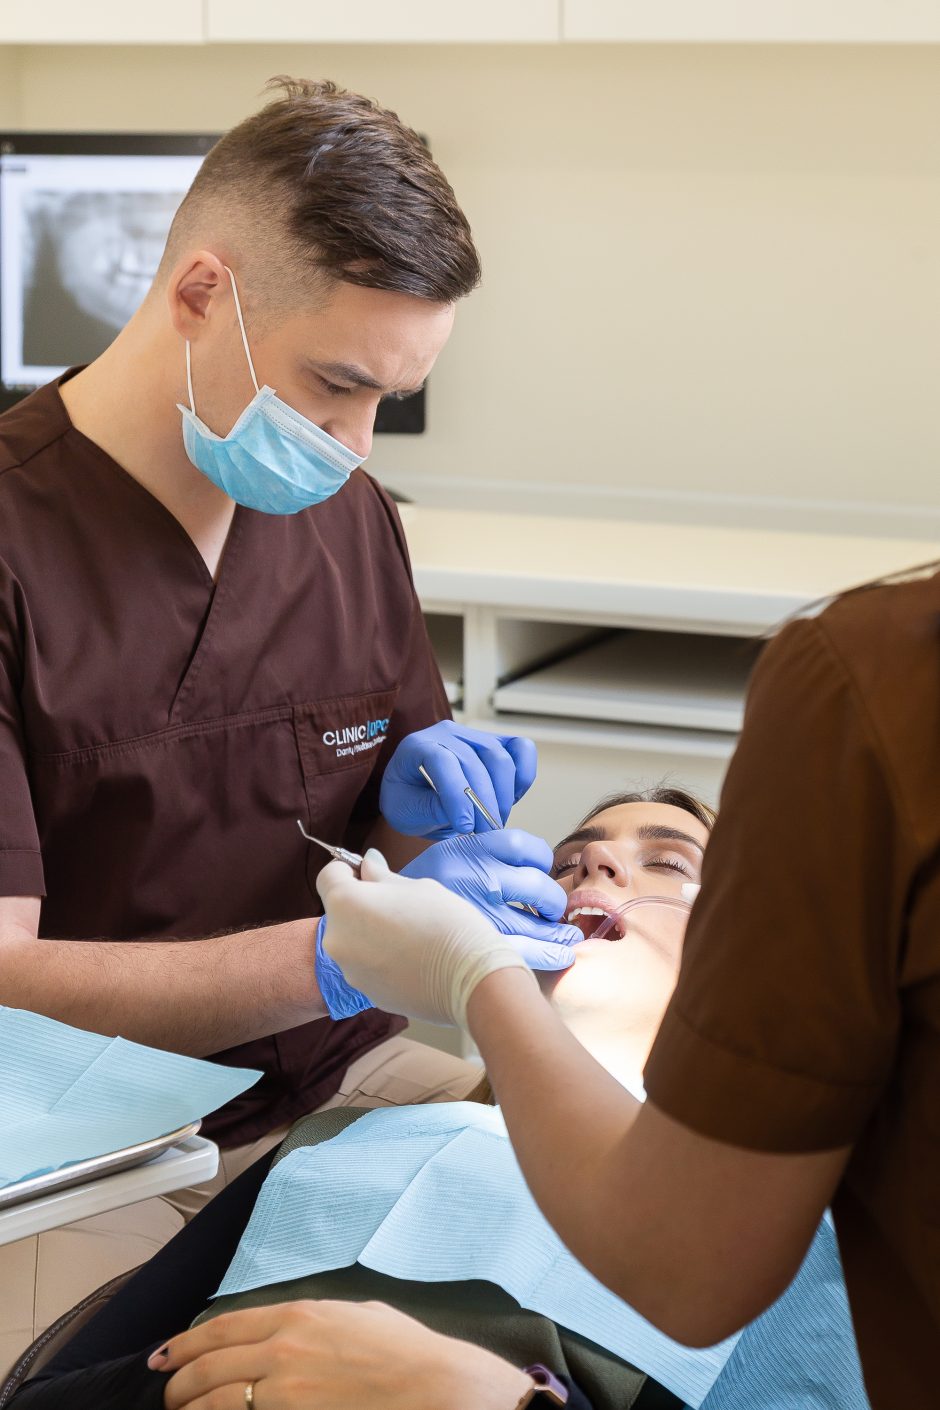 Dantų implantai – saugūs, inovatyvūs ir ilgaamžiai